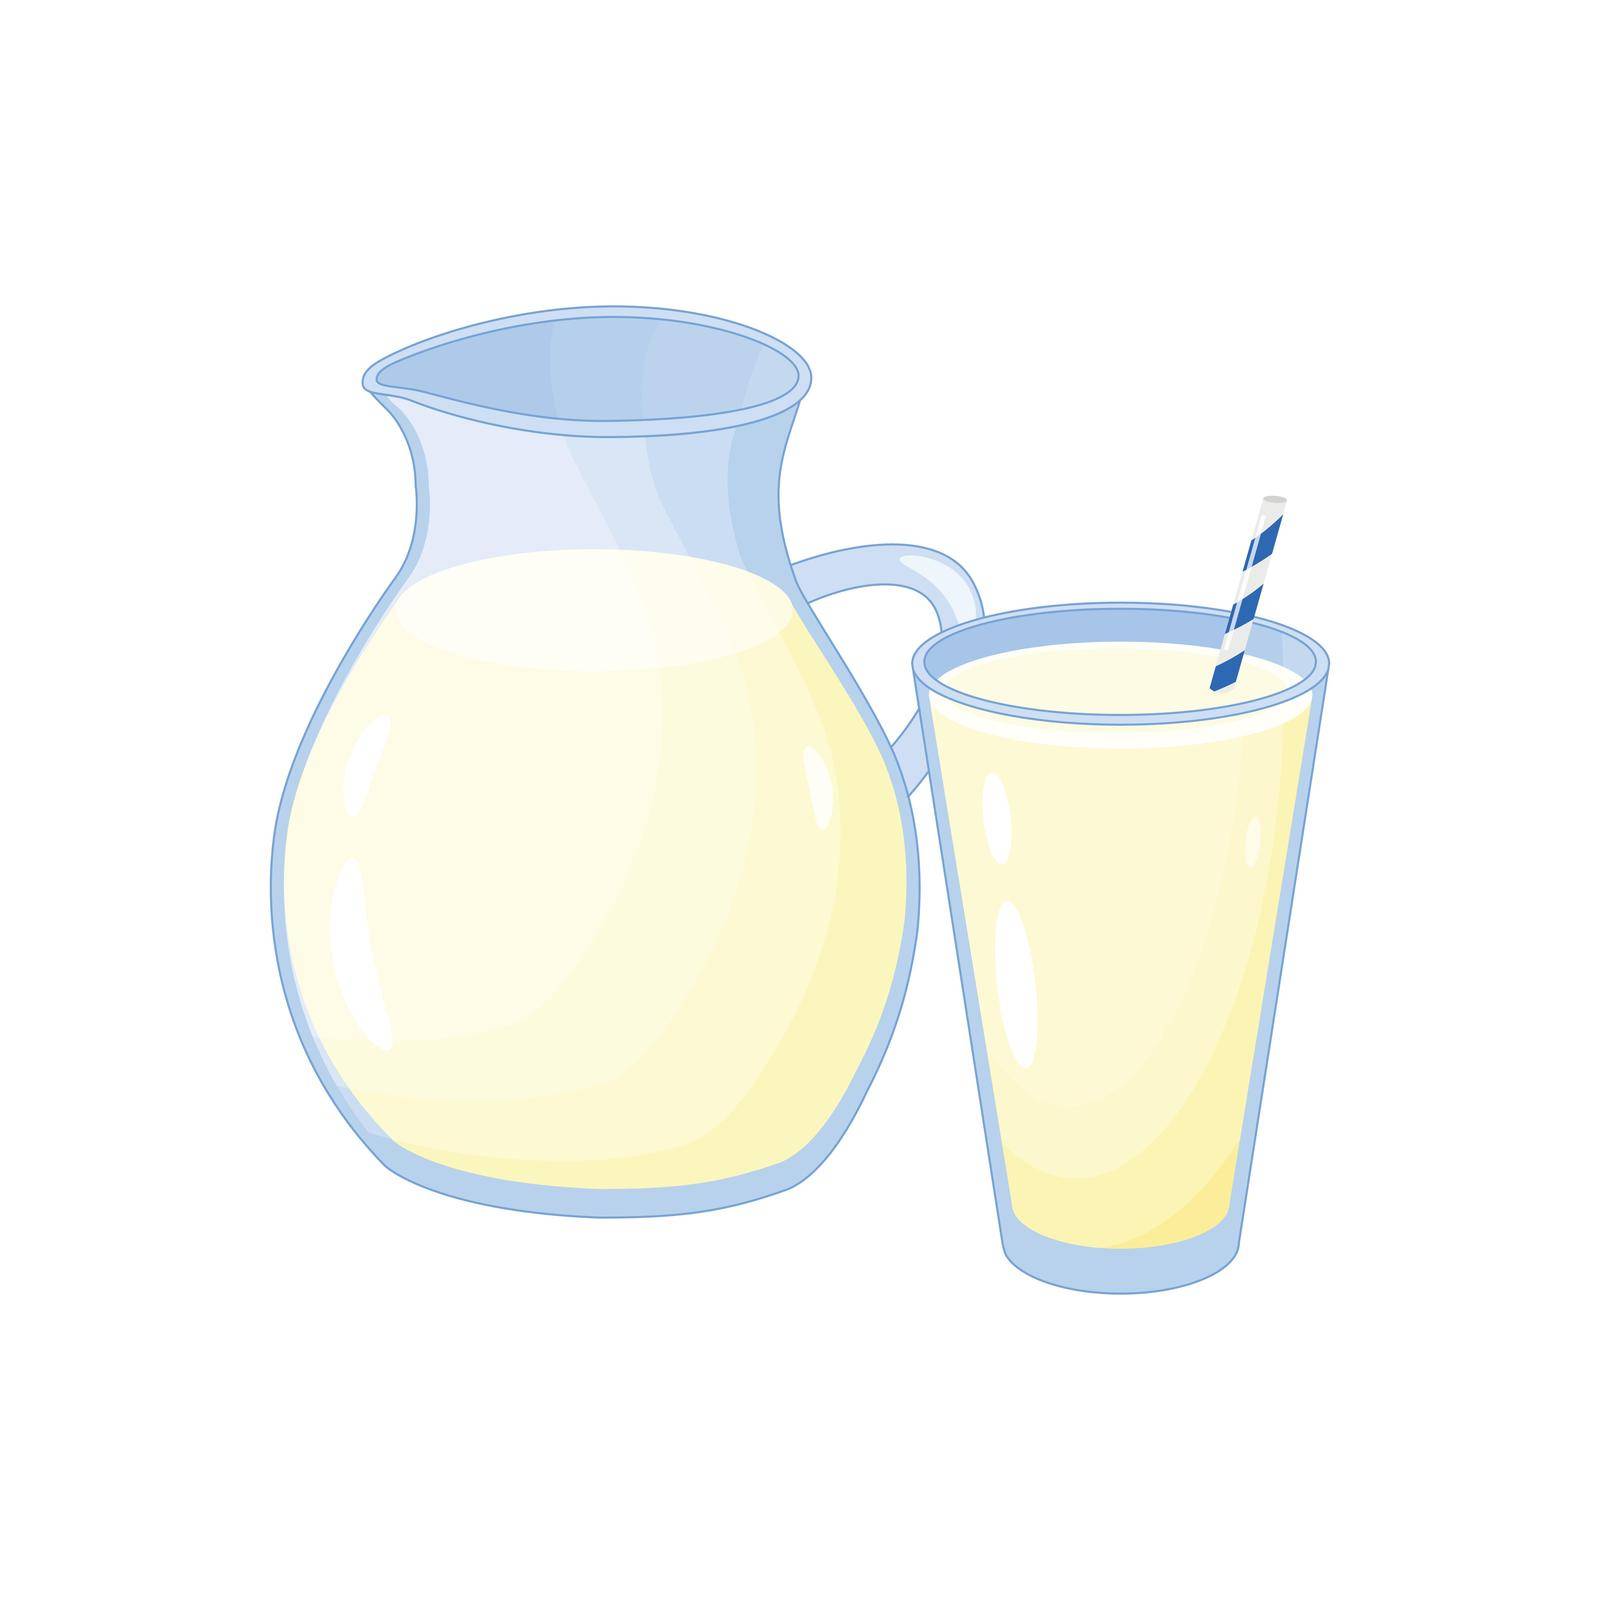 Cartoon milk. by Minur